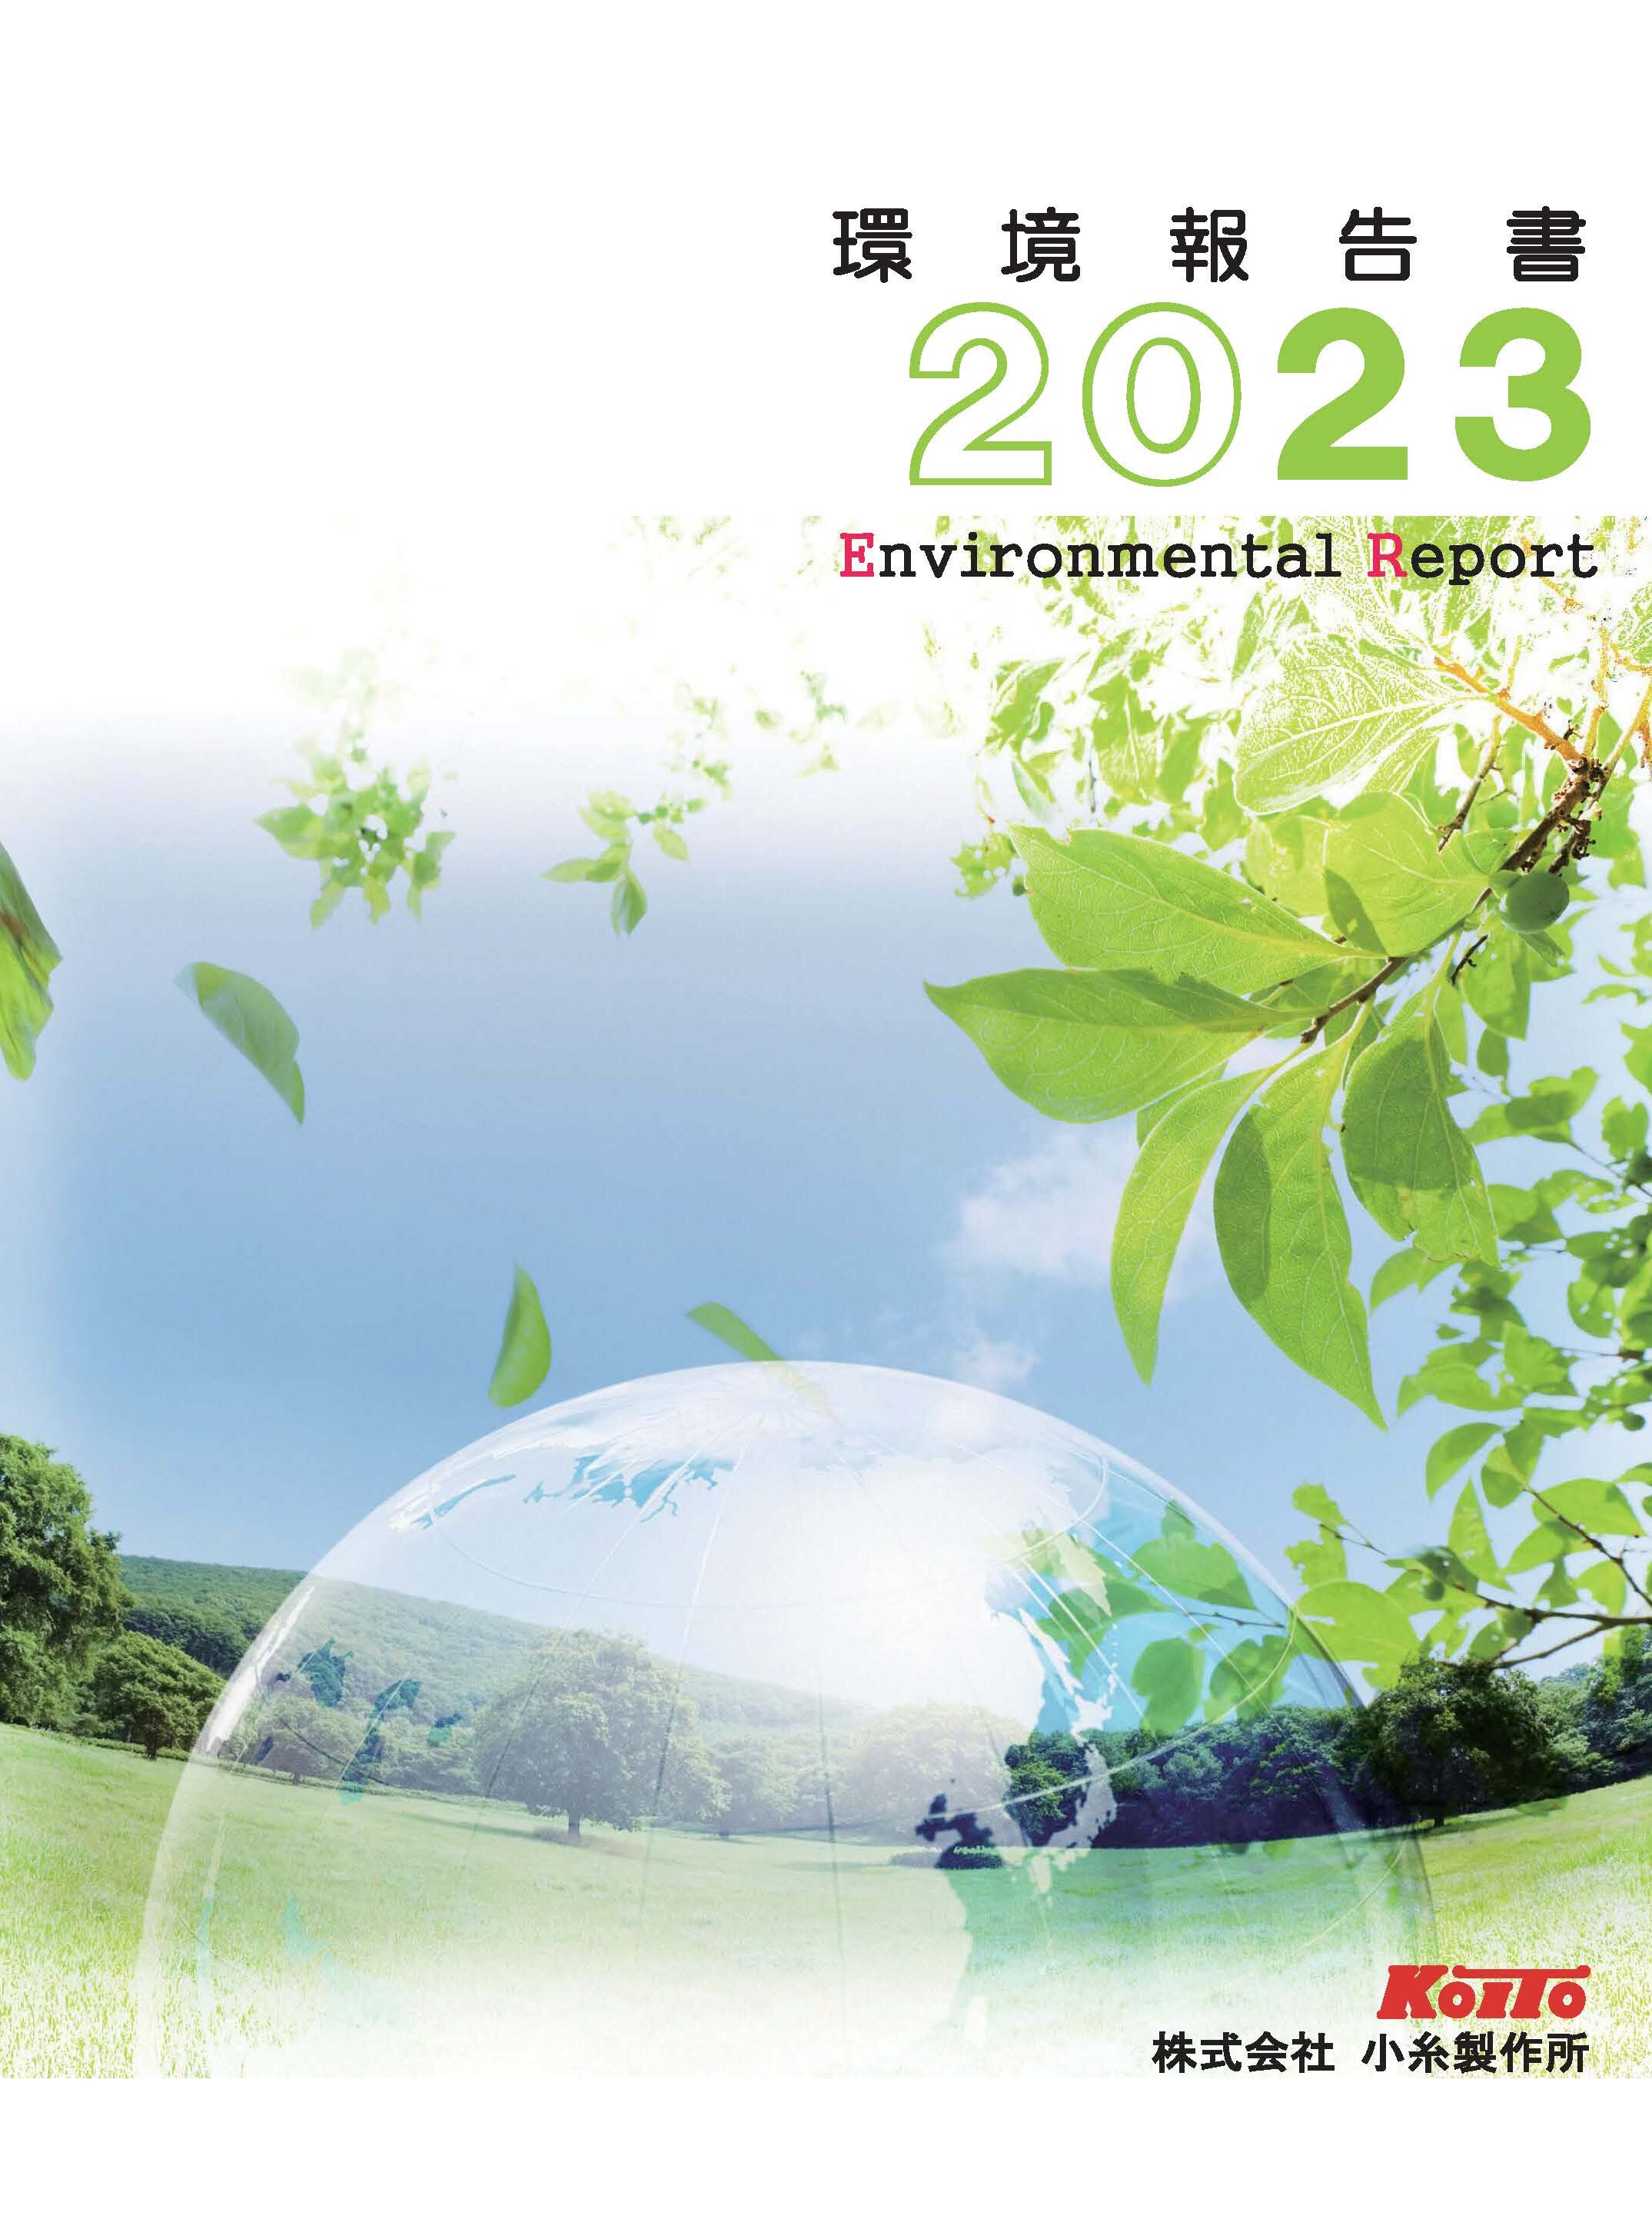 Environmental Report 2023